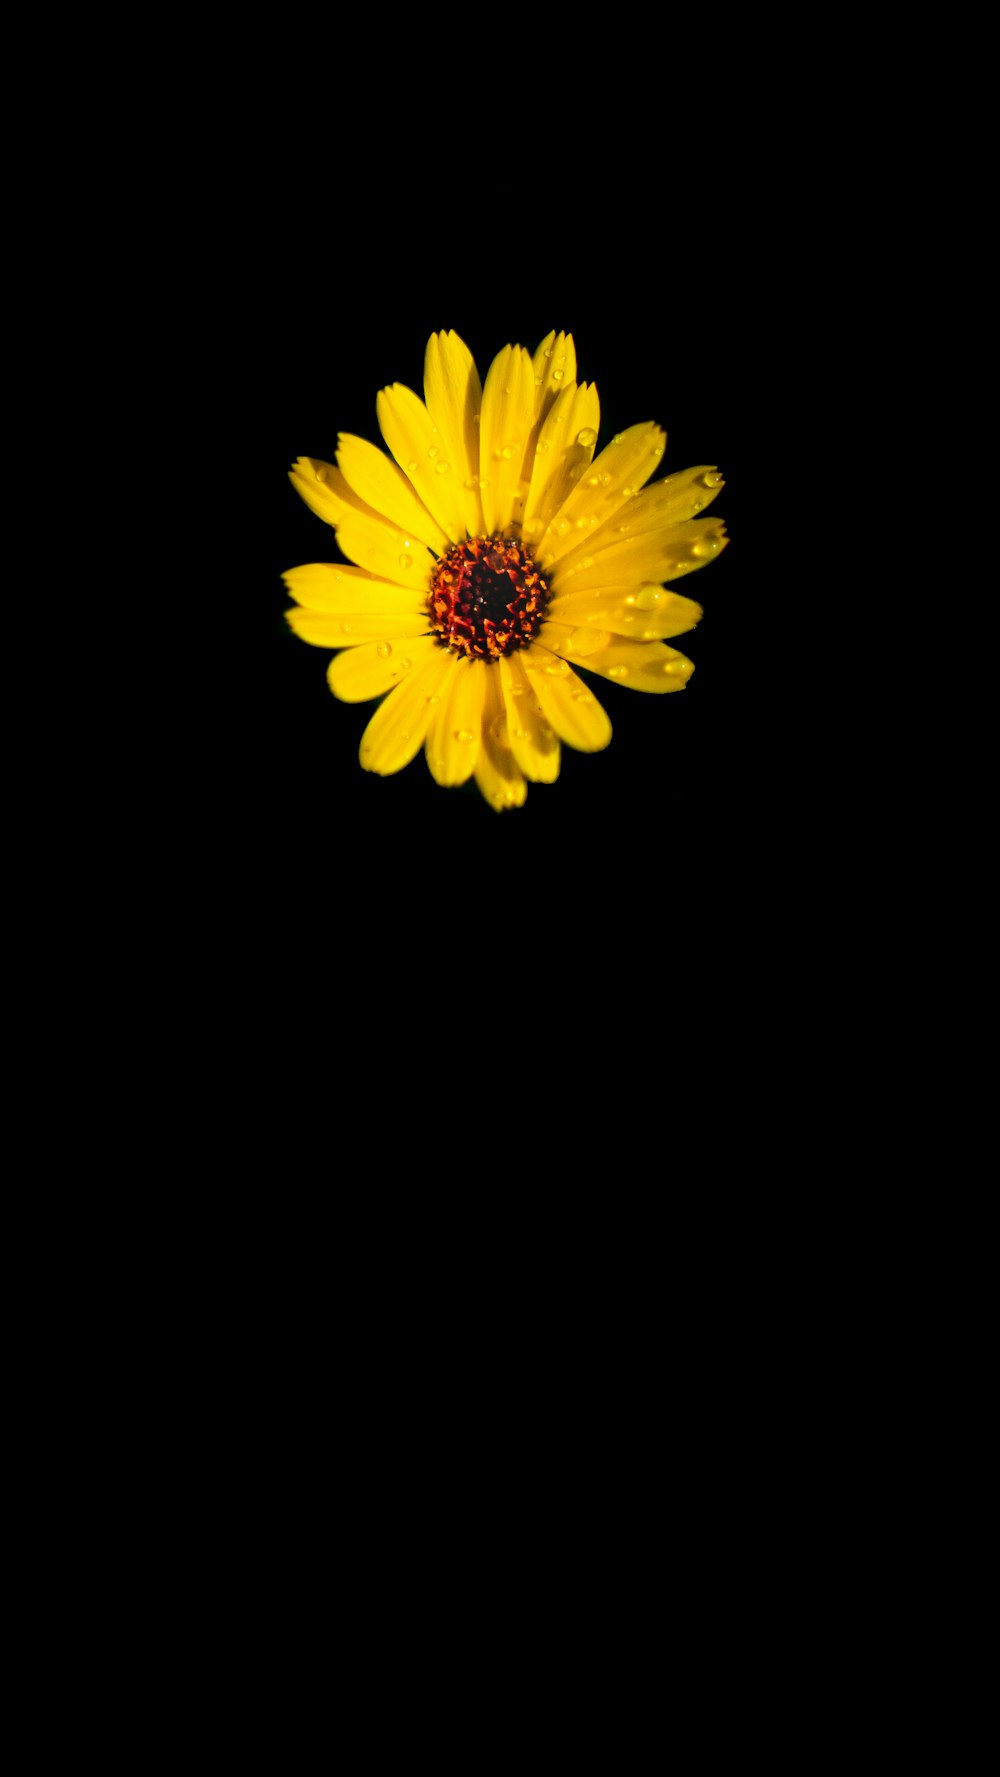 검은 배경에 노란색 꽃 사진 – Unsplash의 무료 아몰레드 이미지